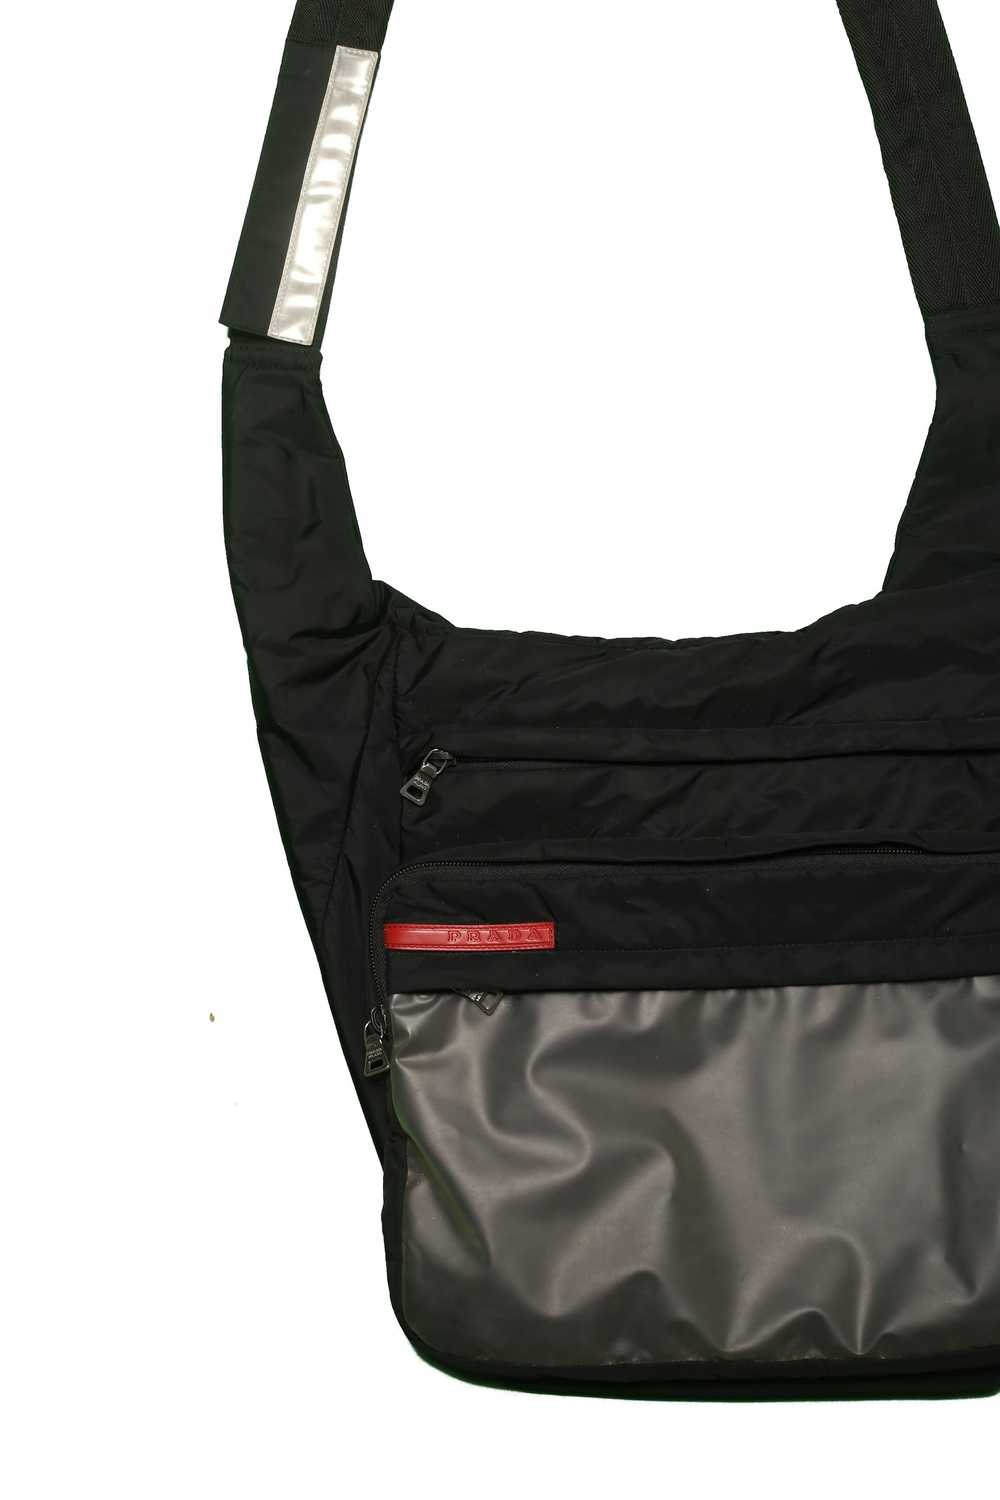 Prada Prada Transparent Shoulder Bag - image 3